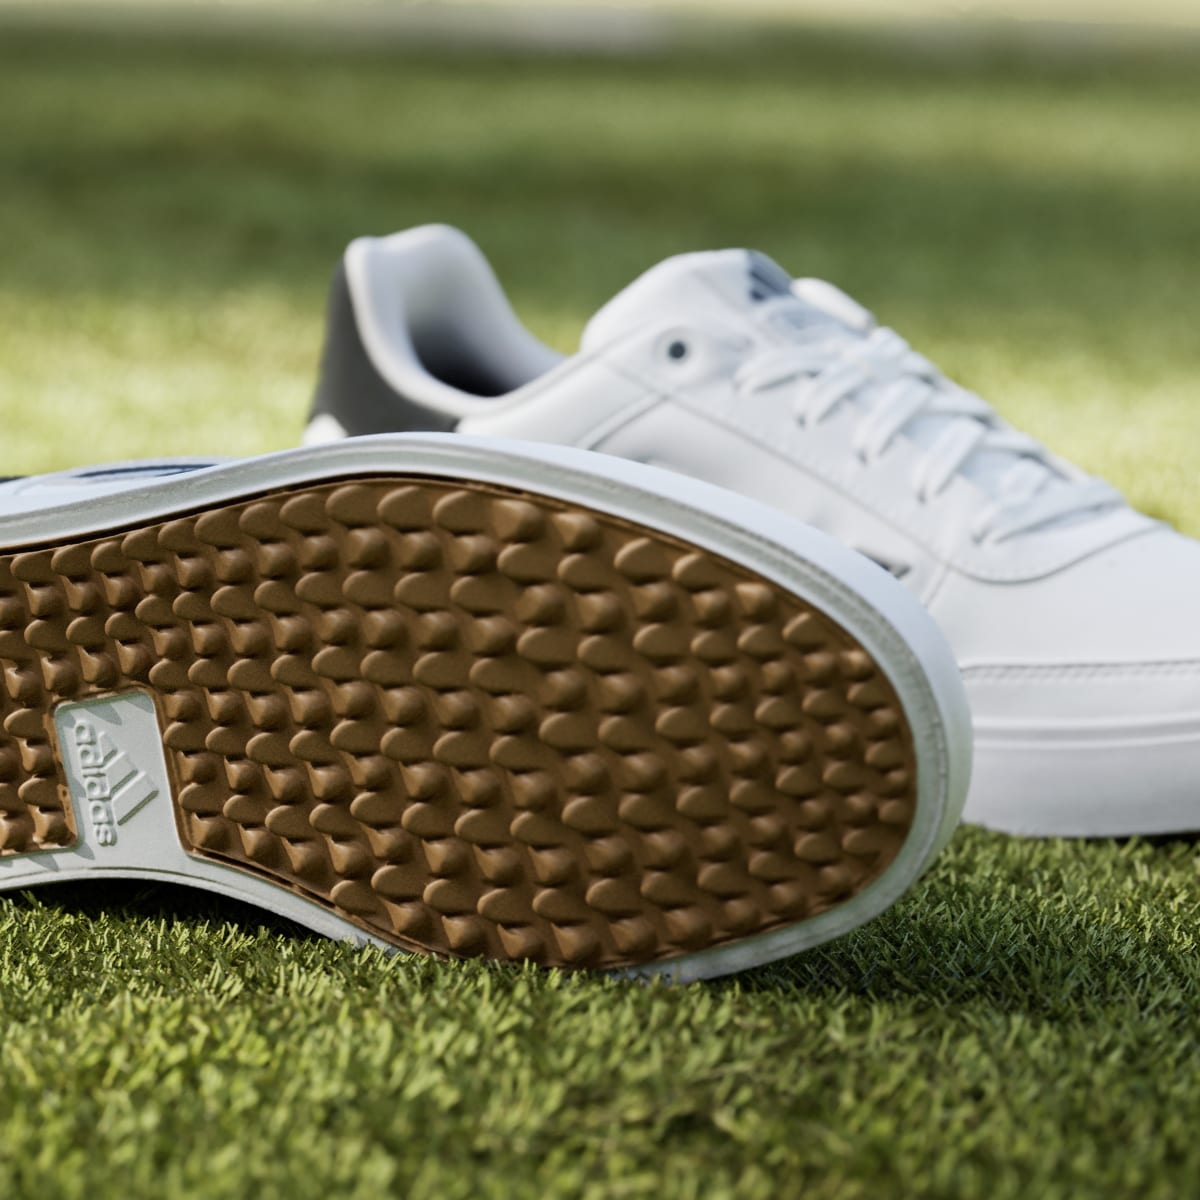 Adidas Retrocross 24 Spikeless Golf Shoes. 8